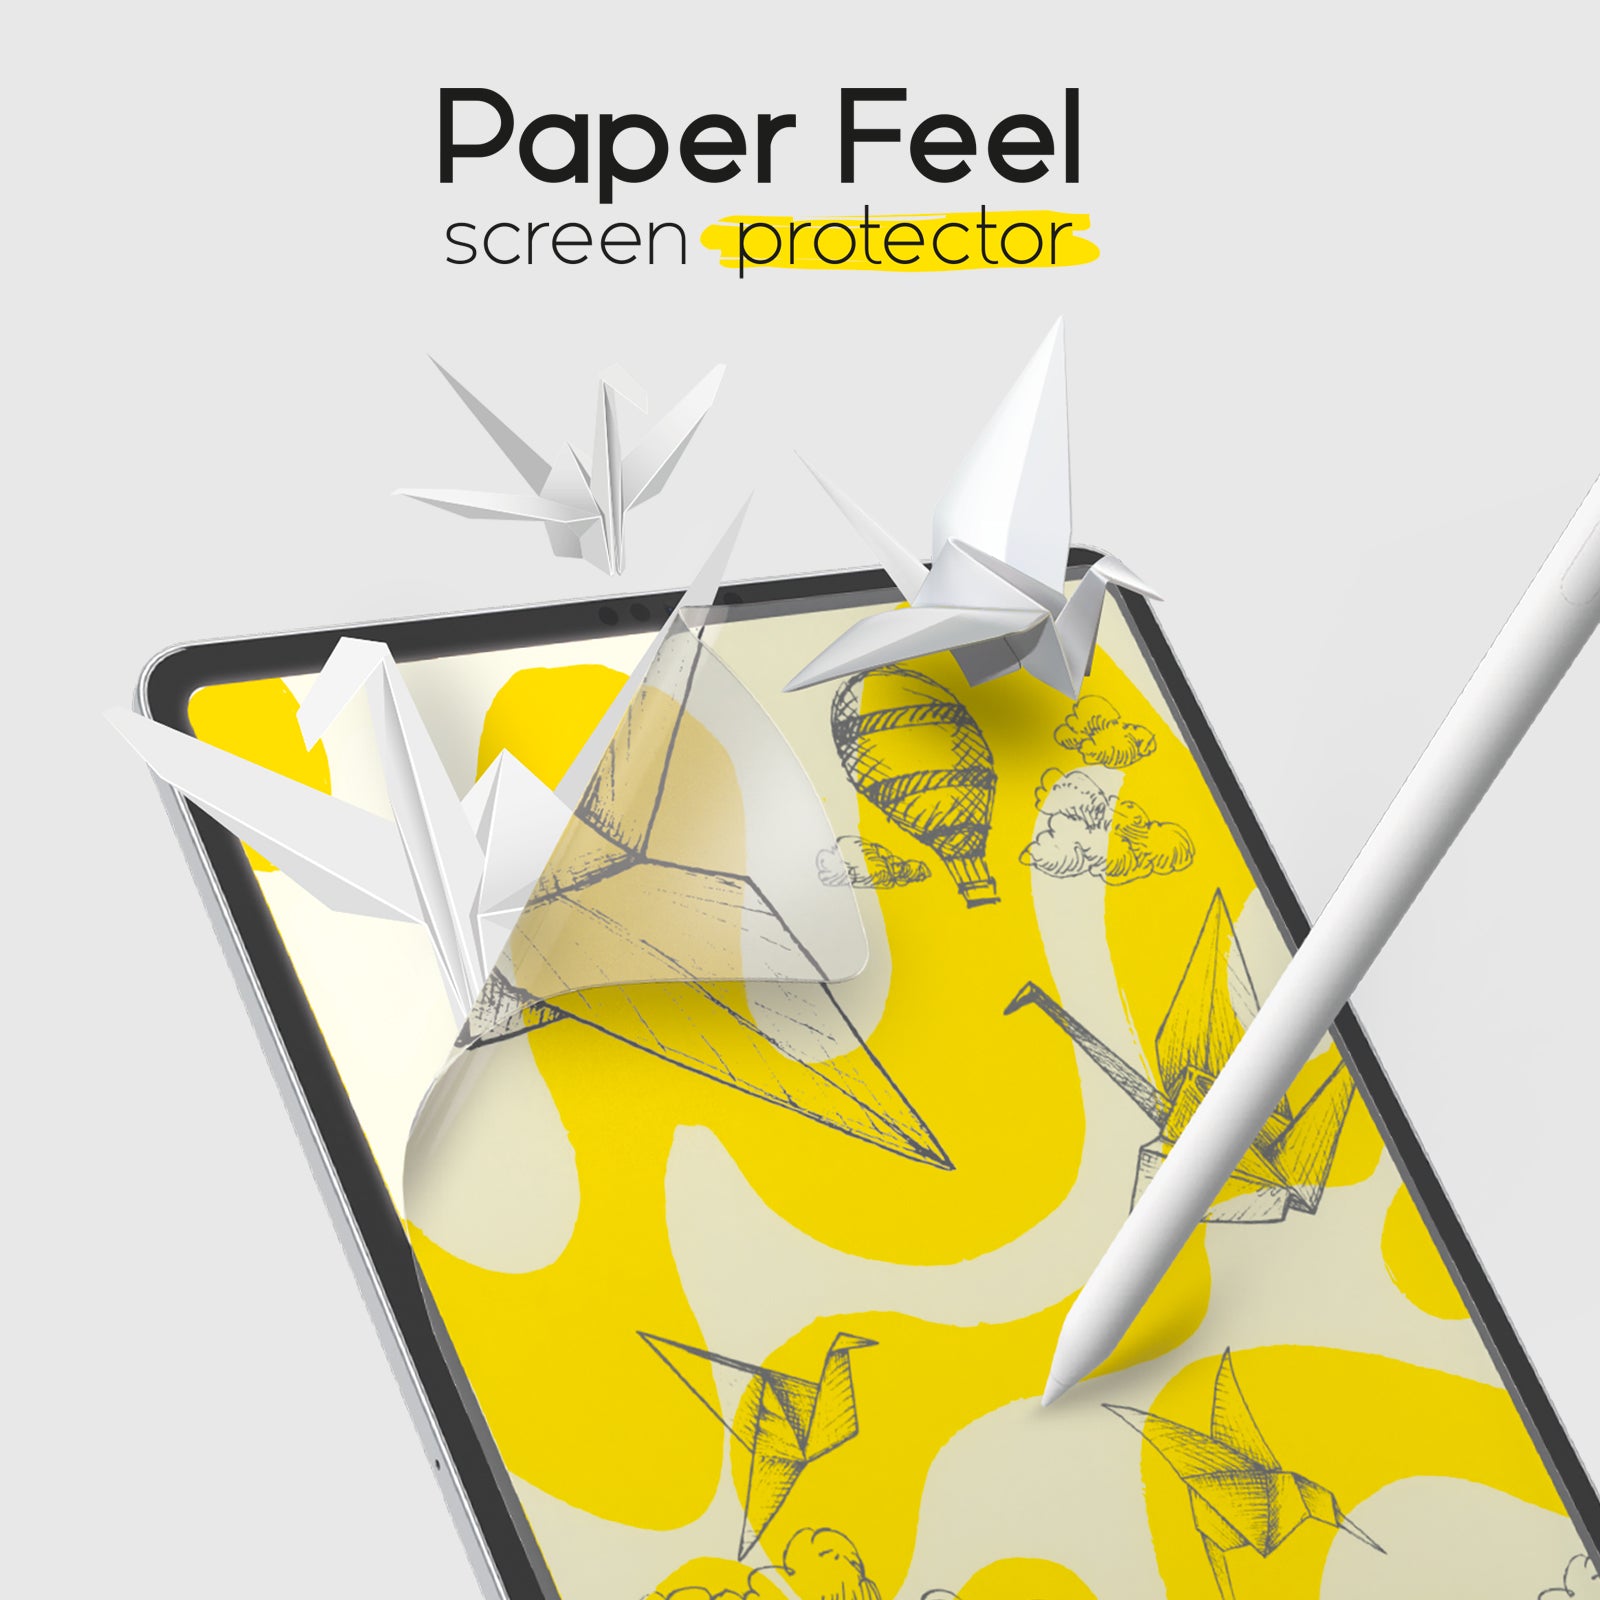 Le film de protection effet papier pour iPad de doodroo conçu pour écrire  et dessiner comme sur du papier ! Découvrez-le maintenant !